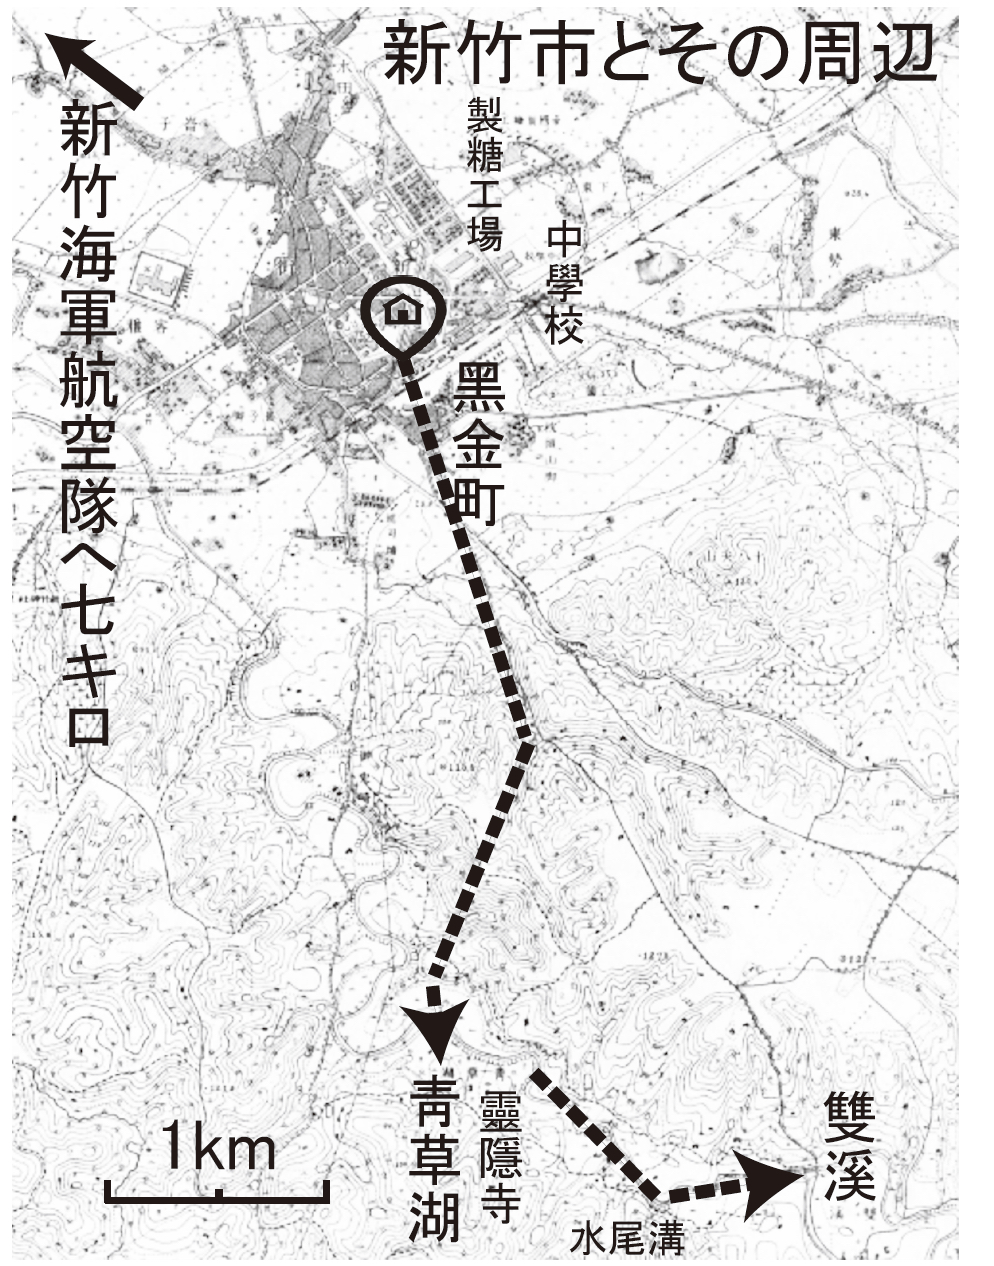 戦時中の新竹地図